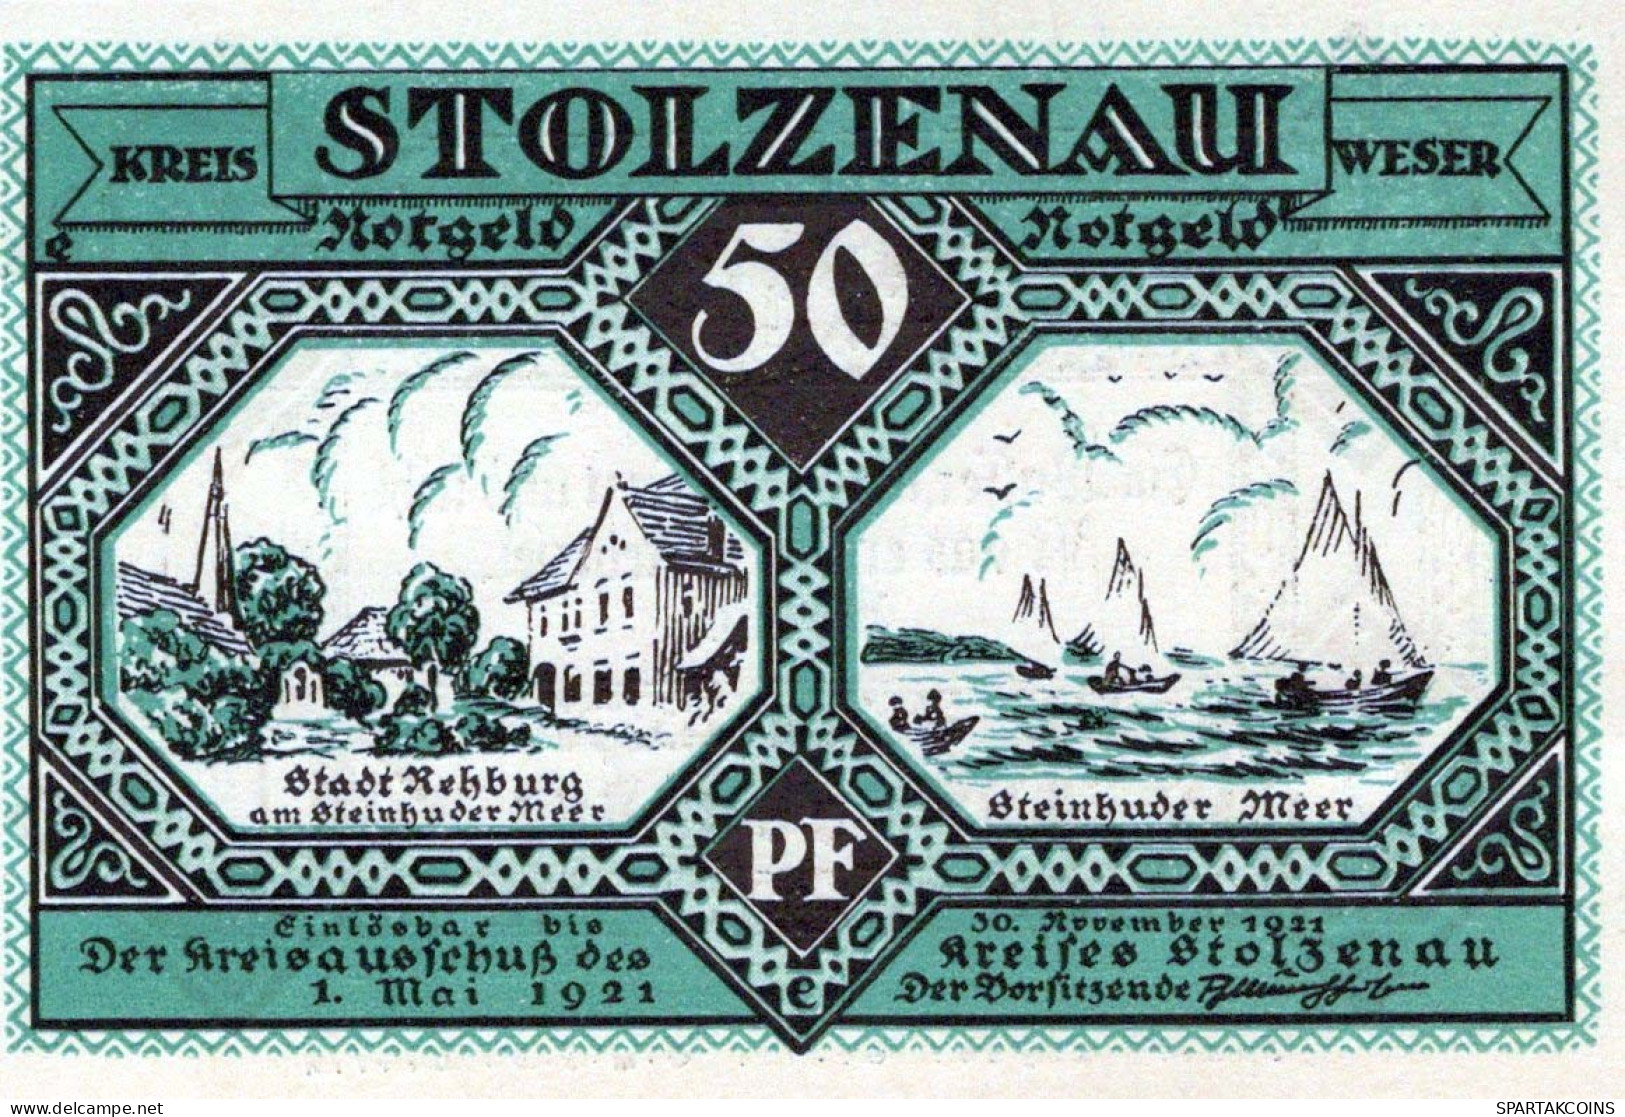 50 PFENNIG 1921 Stadt STOLZENAU Hanover DEUTSCHLAND Notgeld Banknote #PG207 - [11] Local Banknote Issues